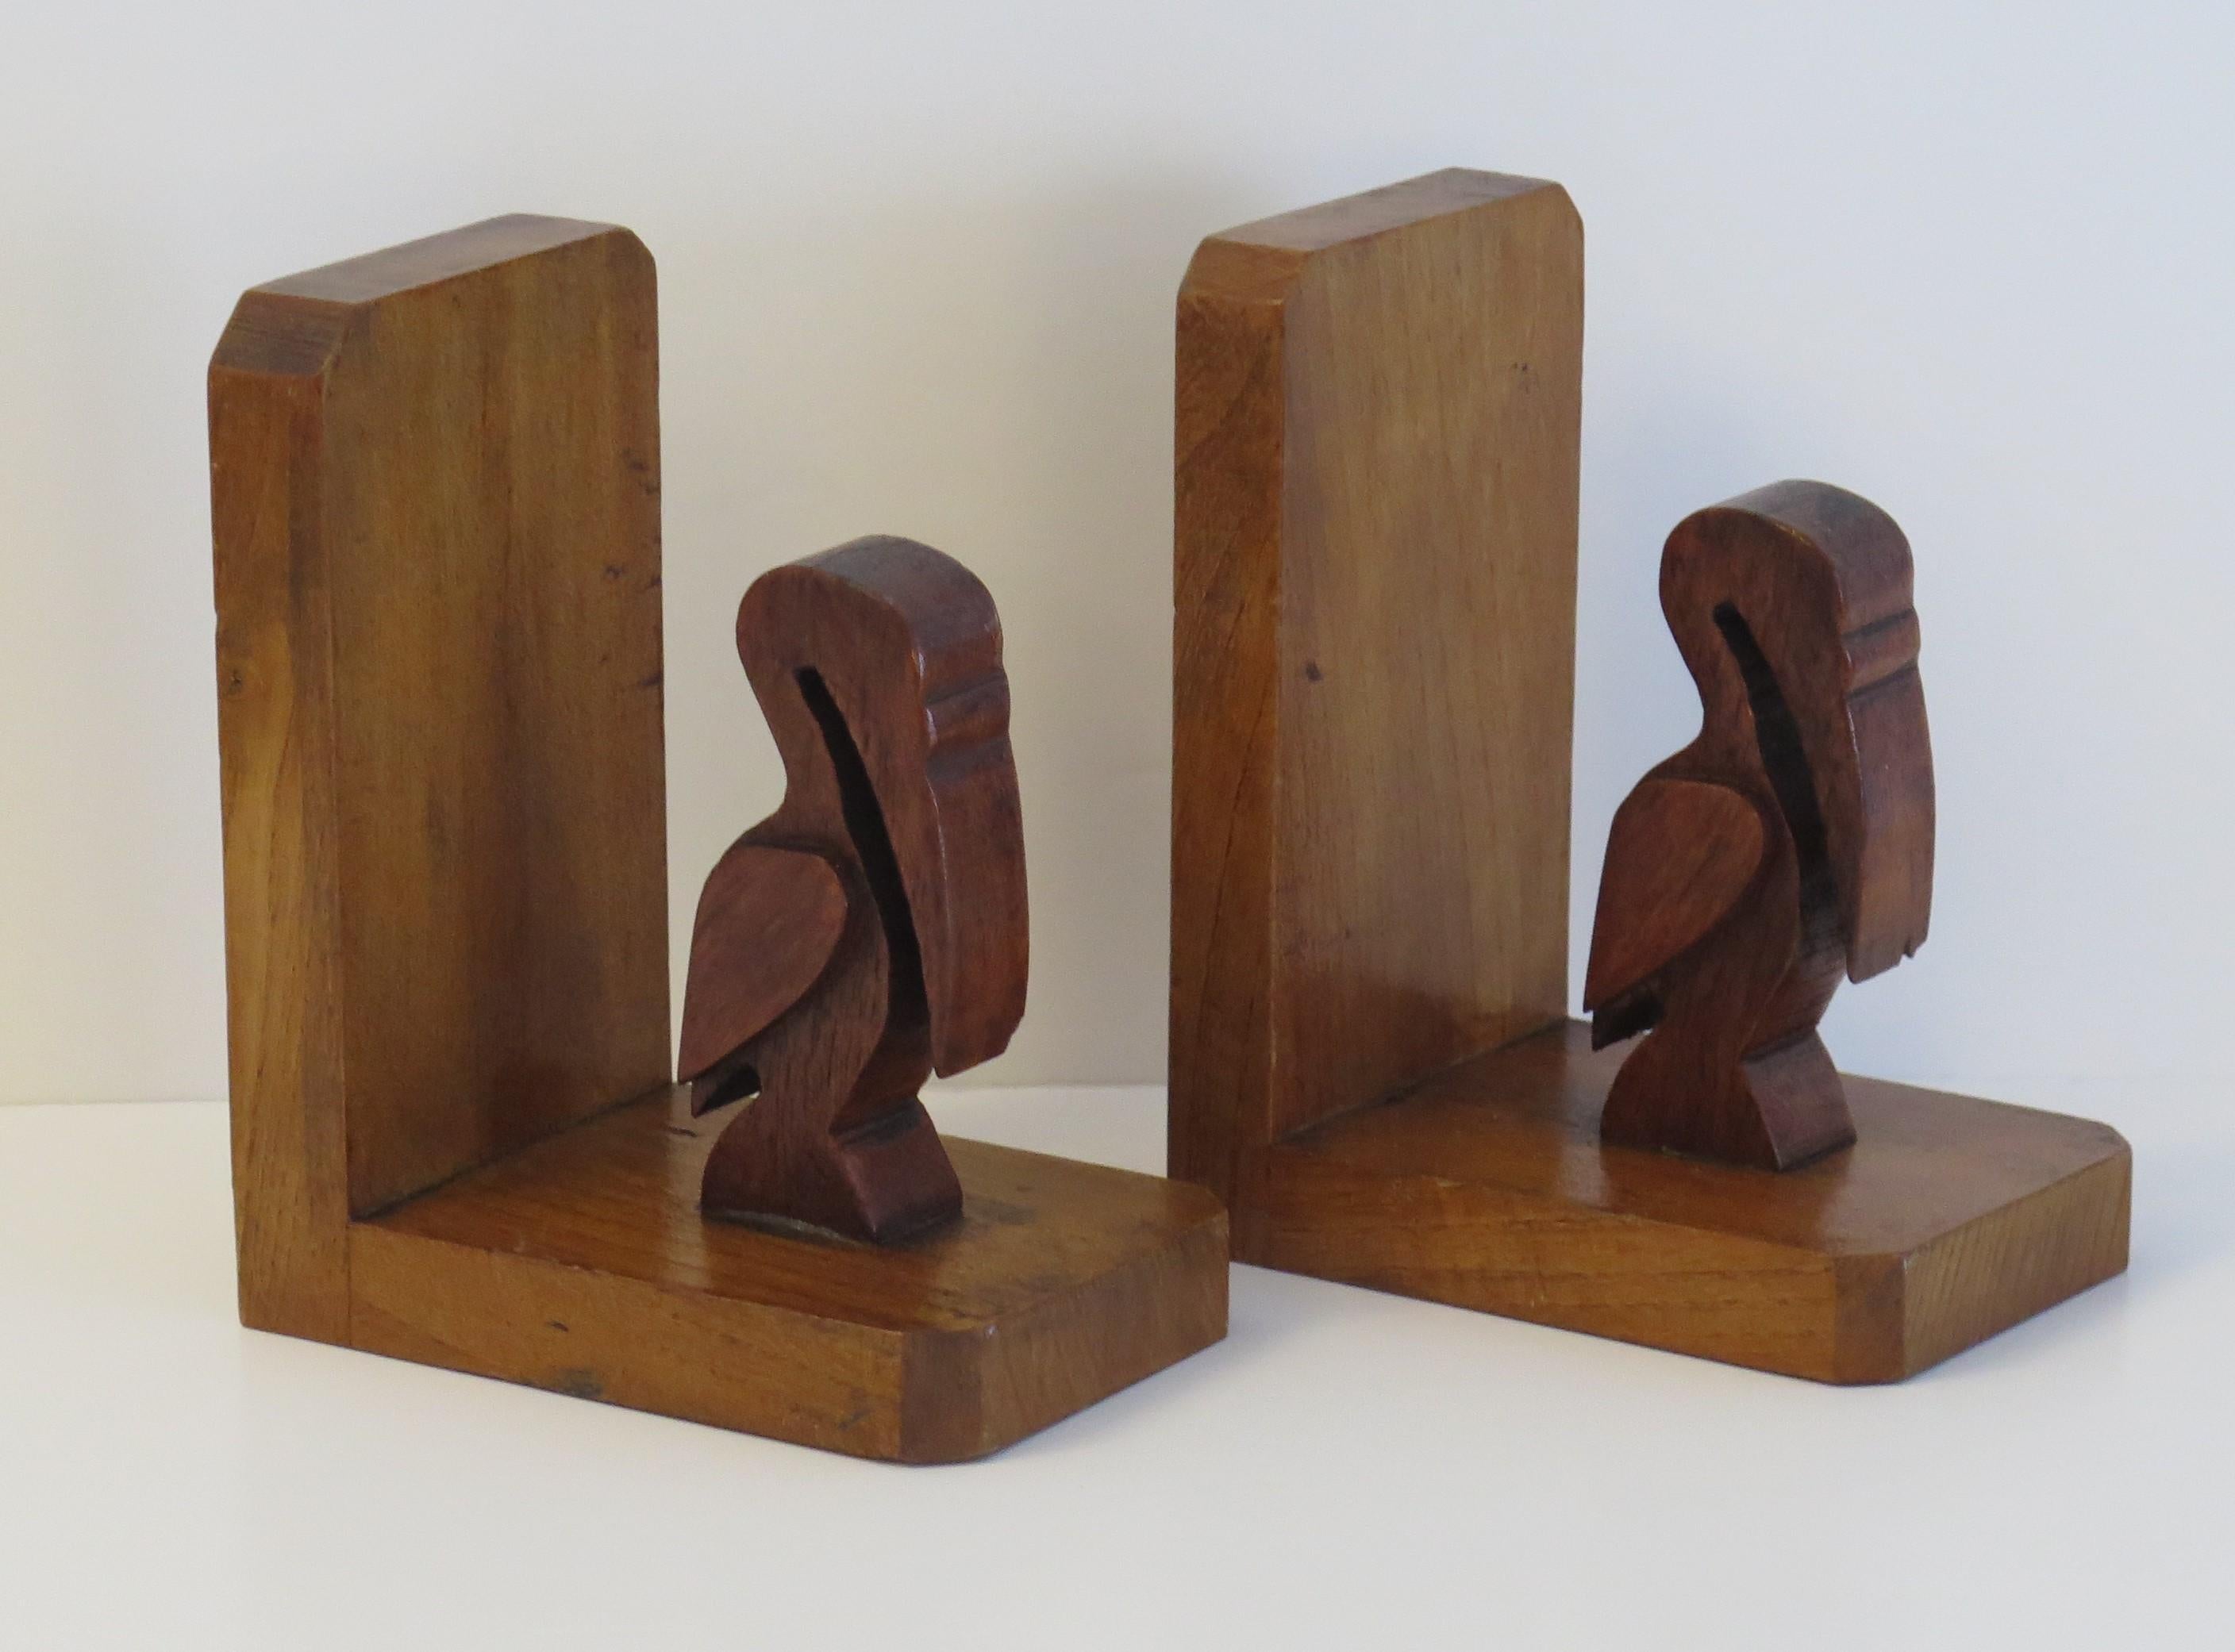 Diese sind ein gutes Paar von Art Deco Zeit, Buch Enden von zwei Pelikane Hand in Holz geschnitzt. 

Jeder stilisierte Pelikan wurde von Hand in ein dunkles Hartholz geschnitzt und steht auf einem Sockel aus einem helleren, kontrastierenden Holz,